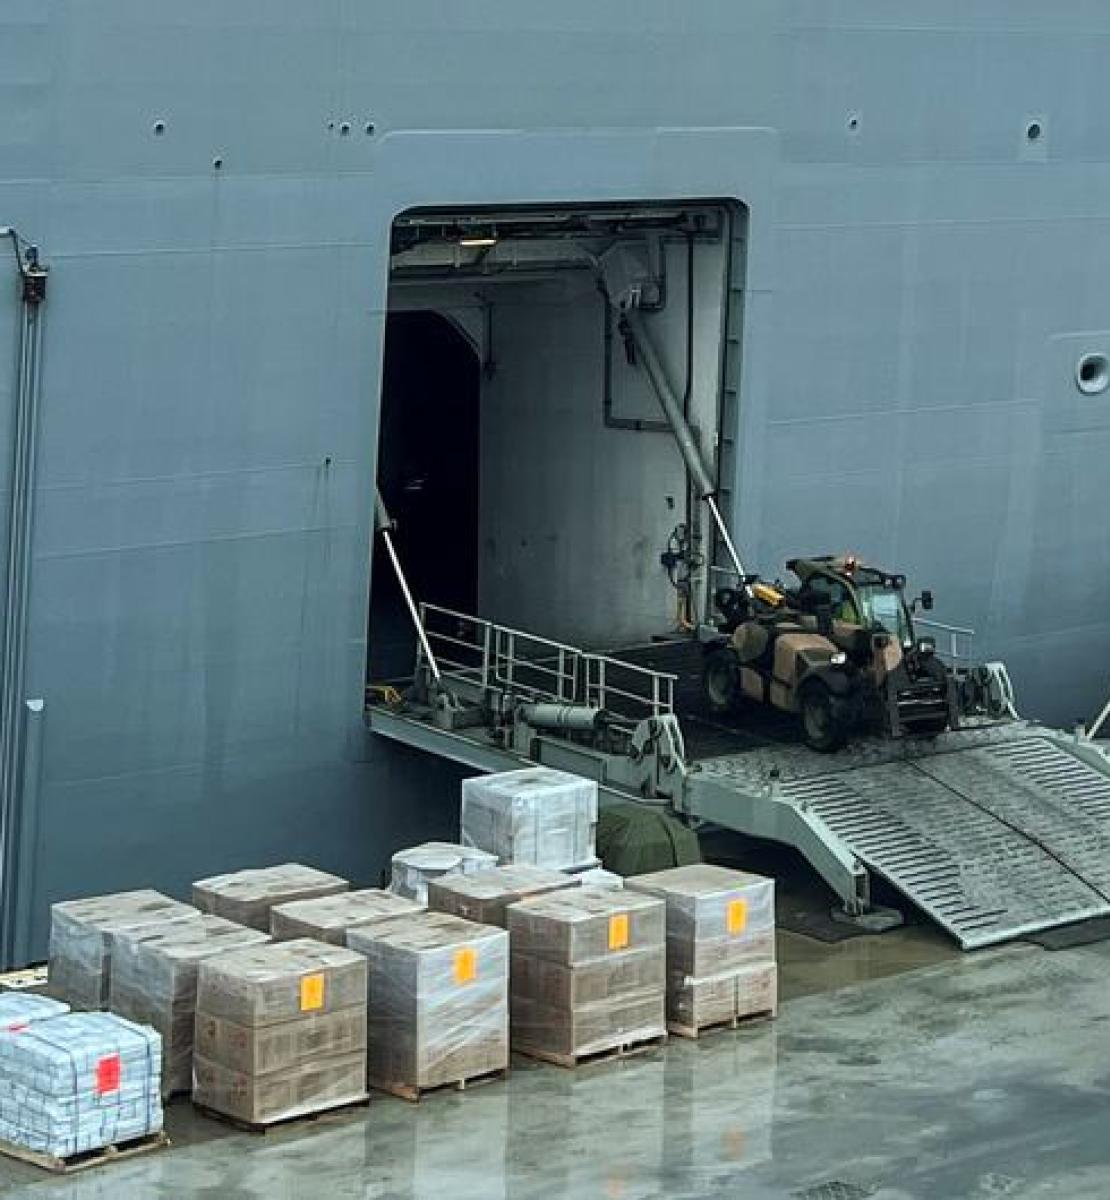 Se están descargando suministros de un barco.